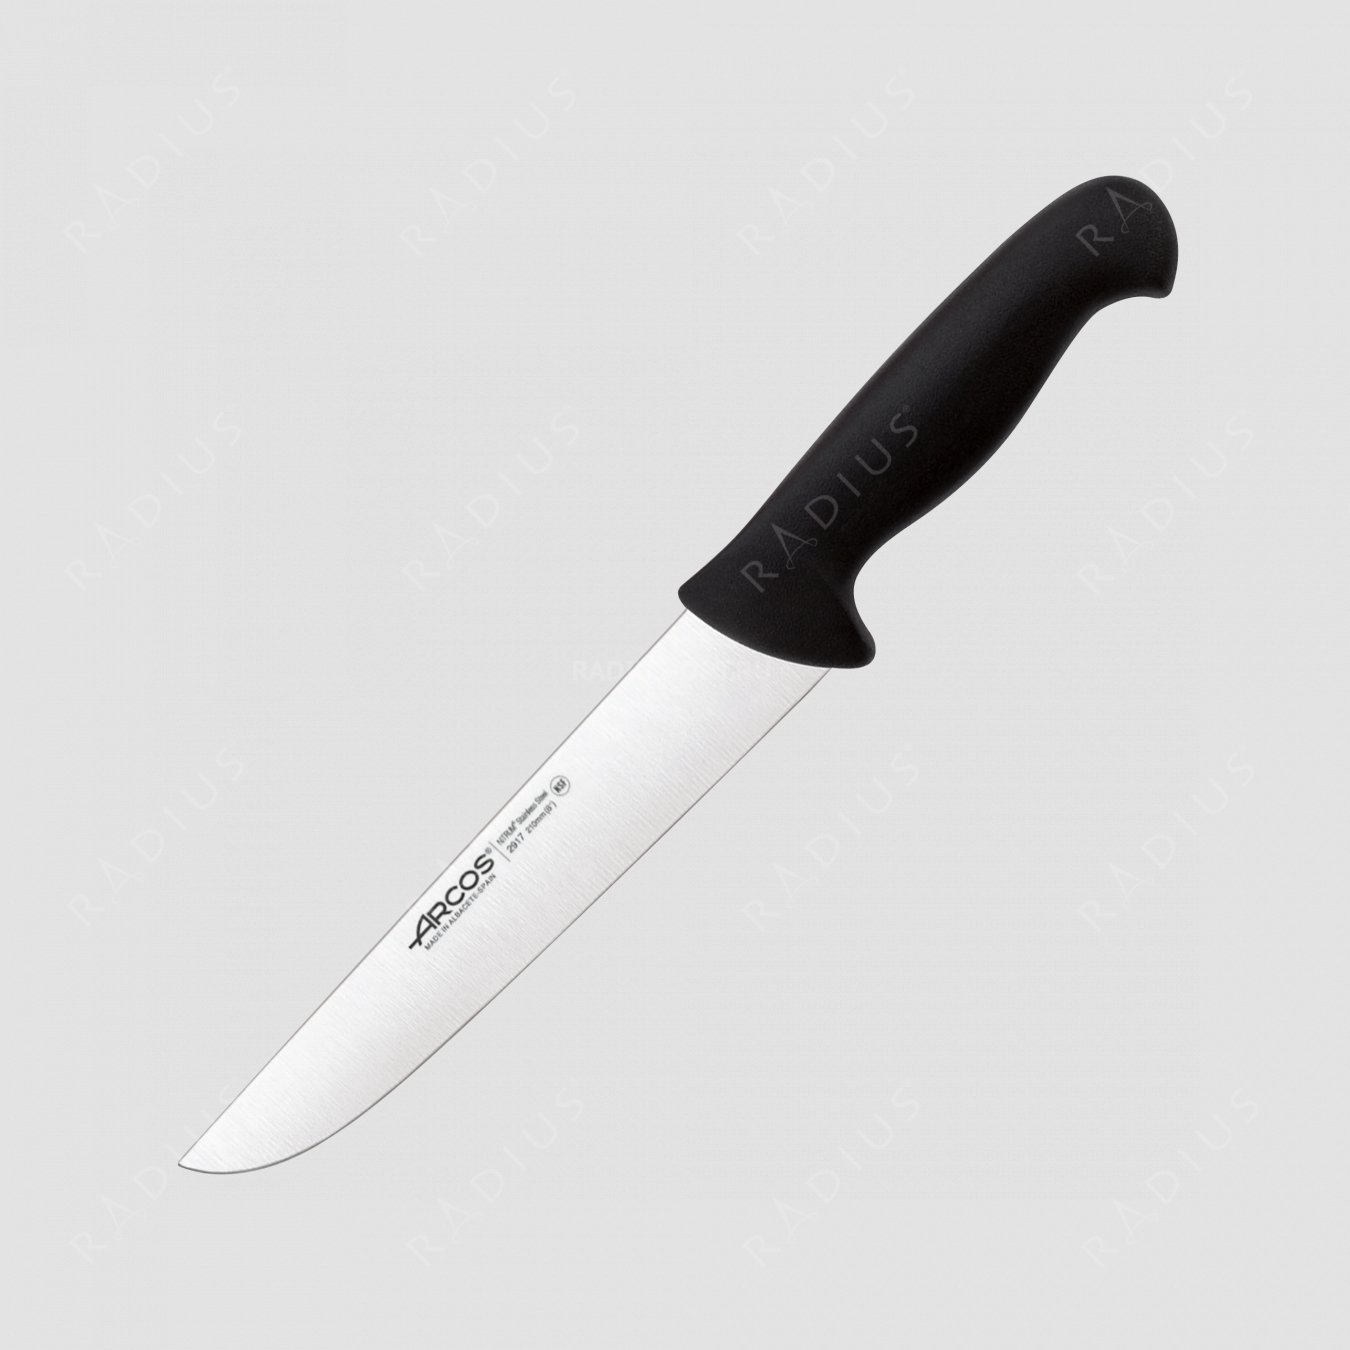 Нож кухонный для разделки 21 см, рукоять - черная, серия 2900, ARCOS, Испания